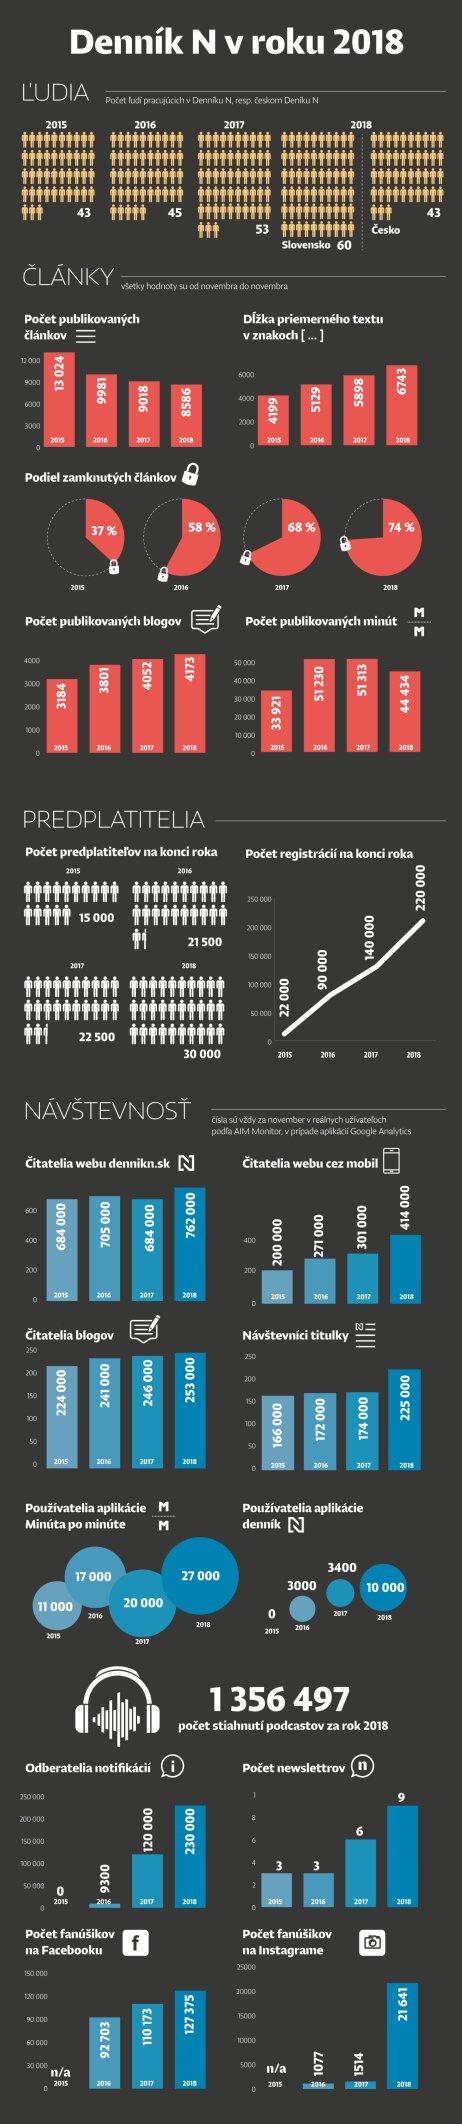 Infografika Denníka N za rok 2018. Vizuál: Soňa Ševčíková